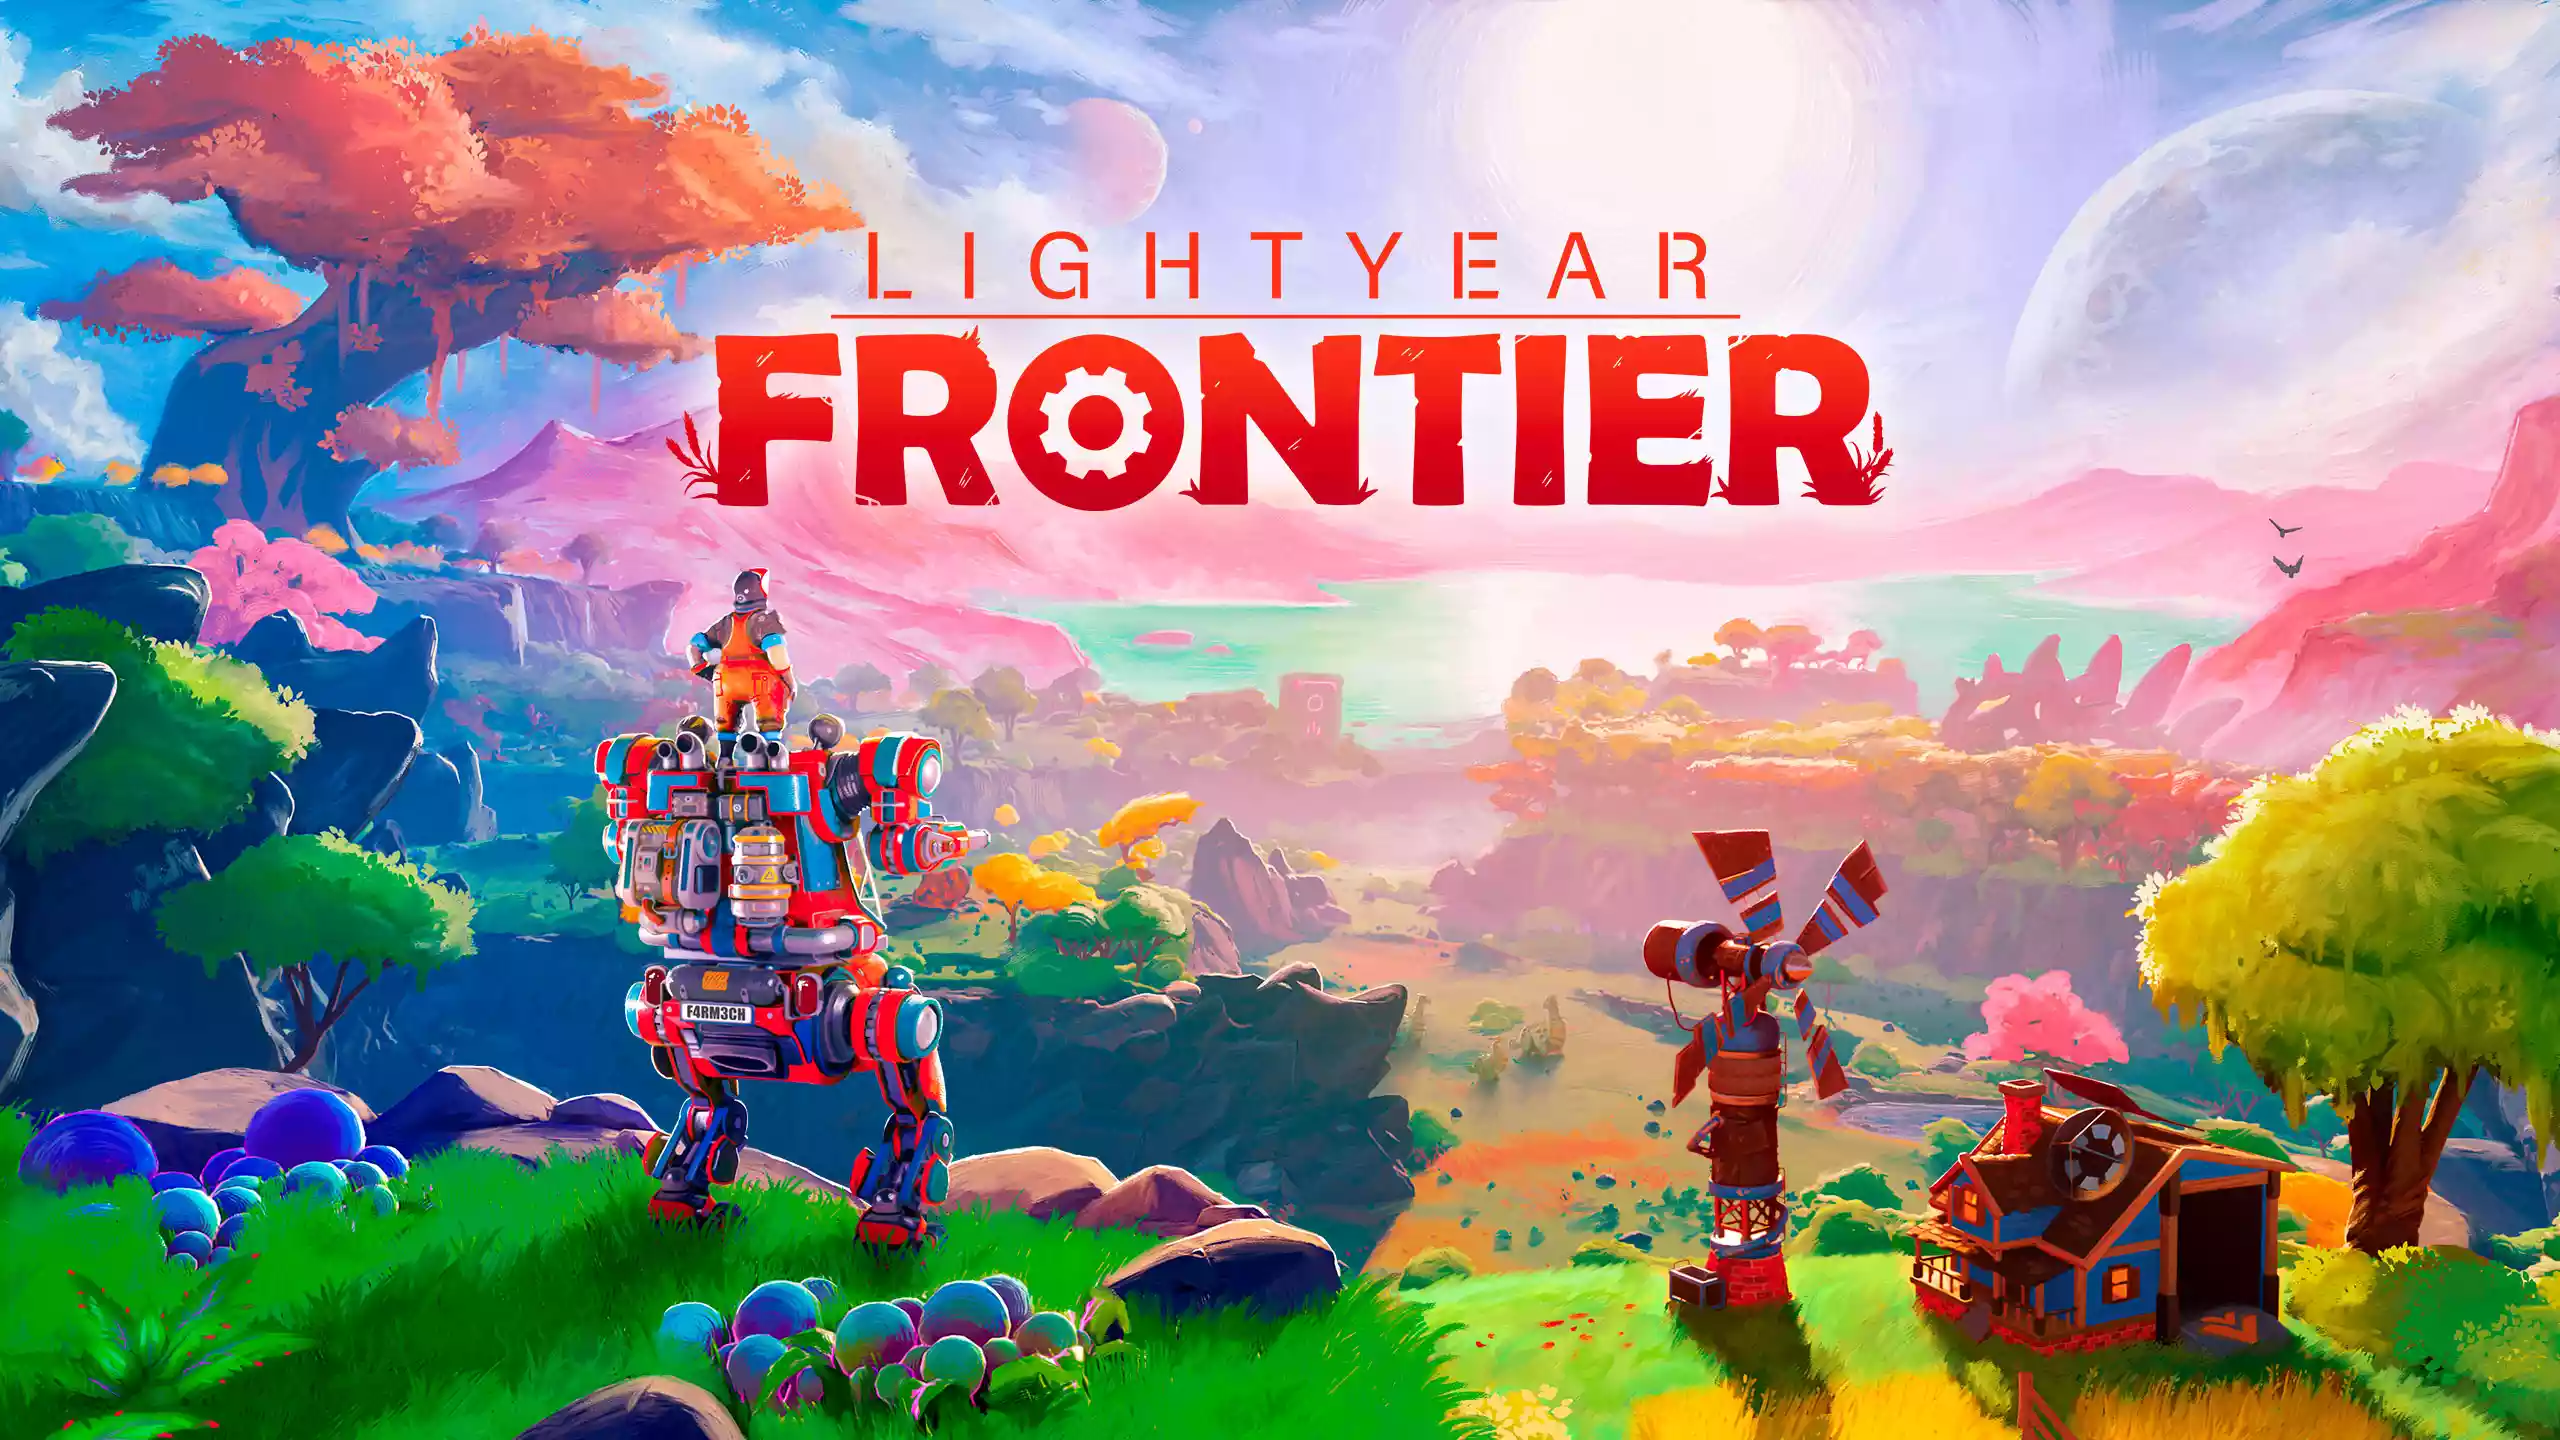 نقد و بررسی بازی Lightyear Frontier